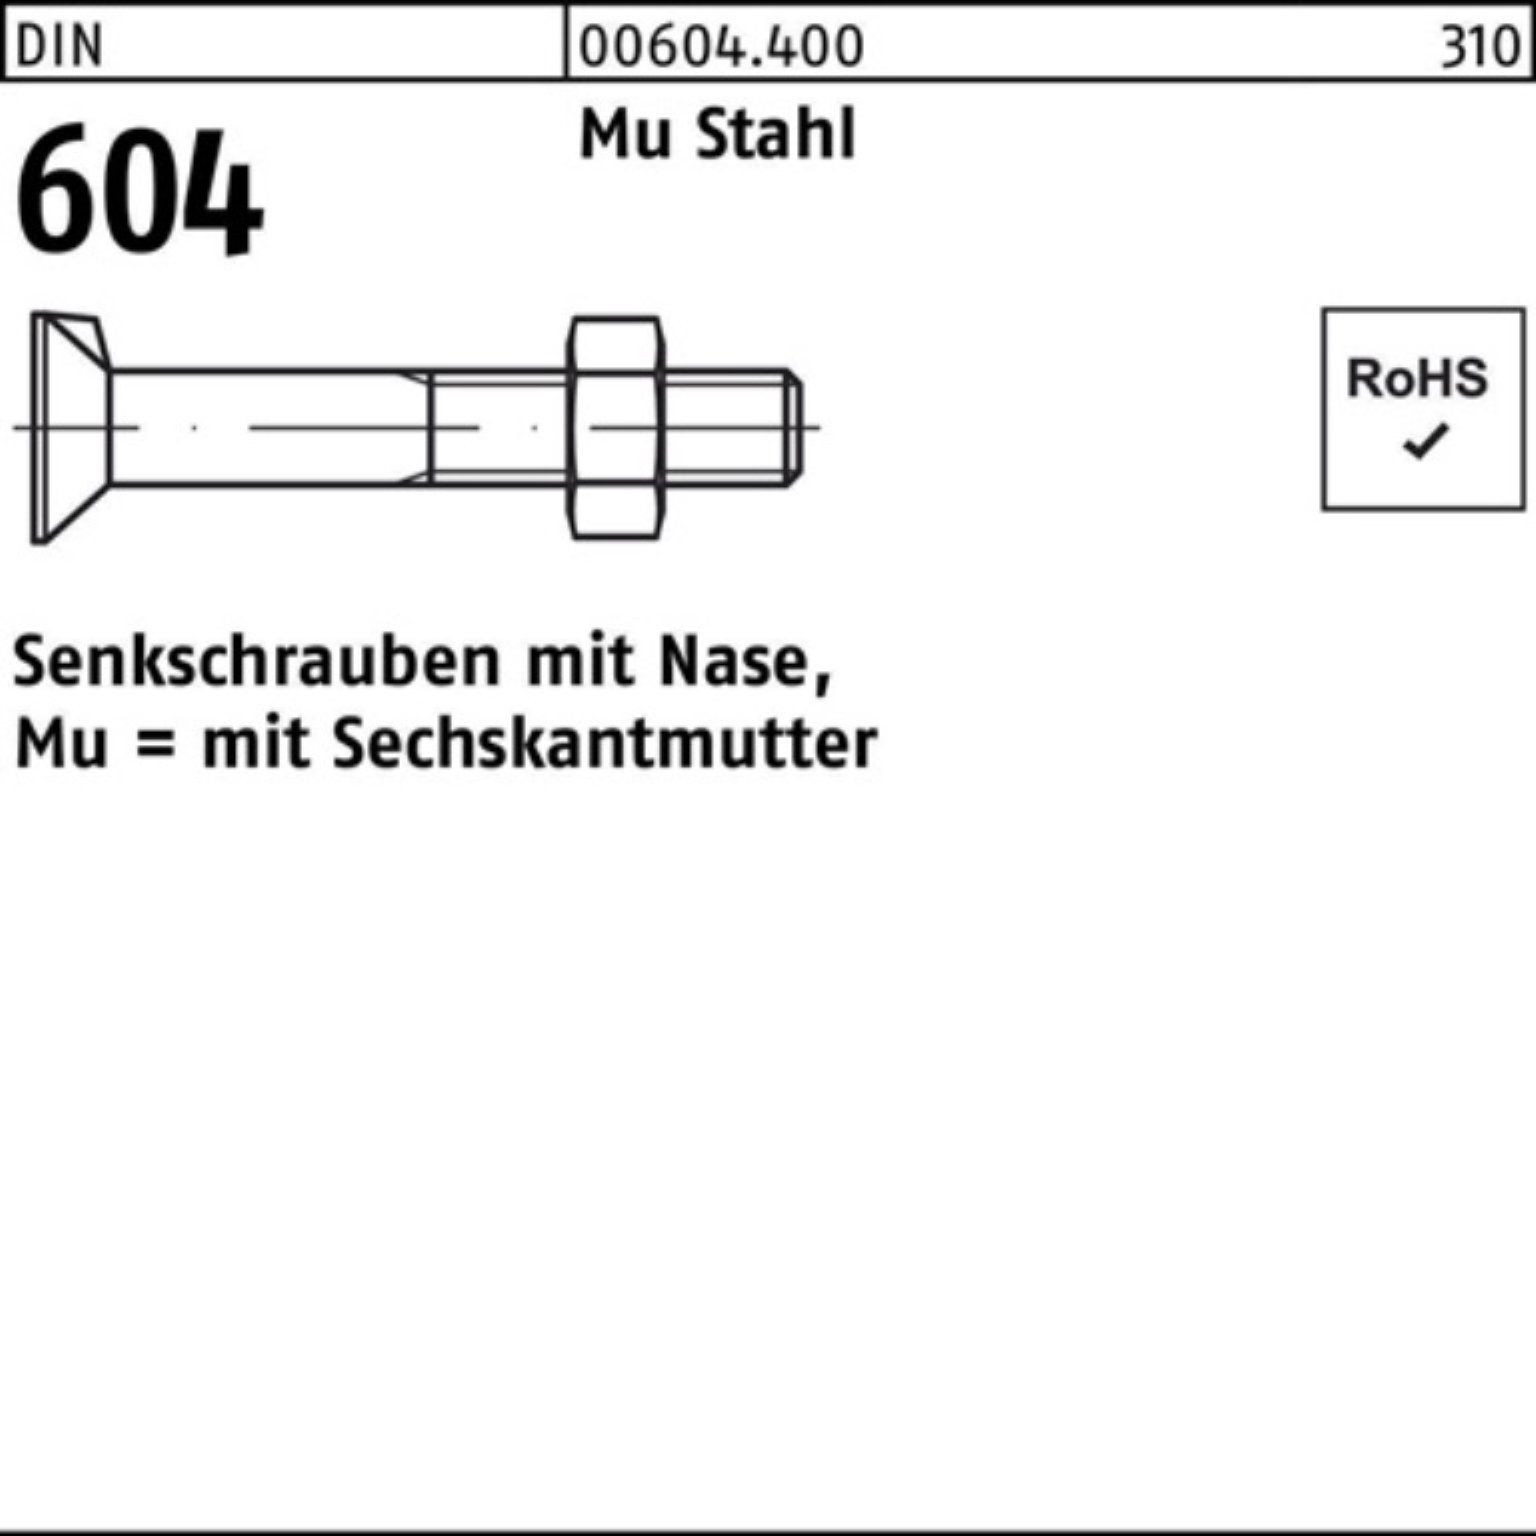 Reyher Senkschraube 200er Pack Senkschraube DIN 604 Nase/6-ktmutter M6x 60 Mu Stahl 4.6 20